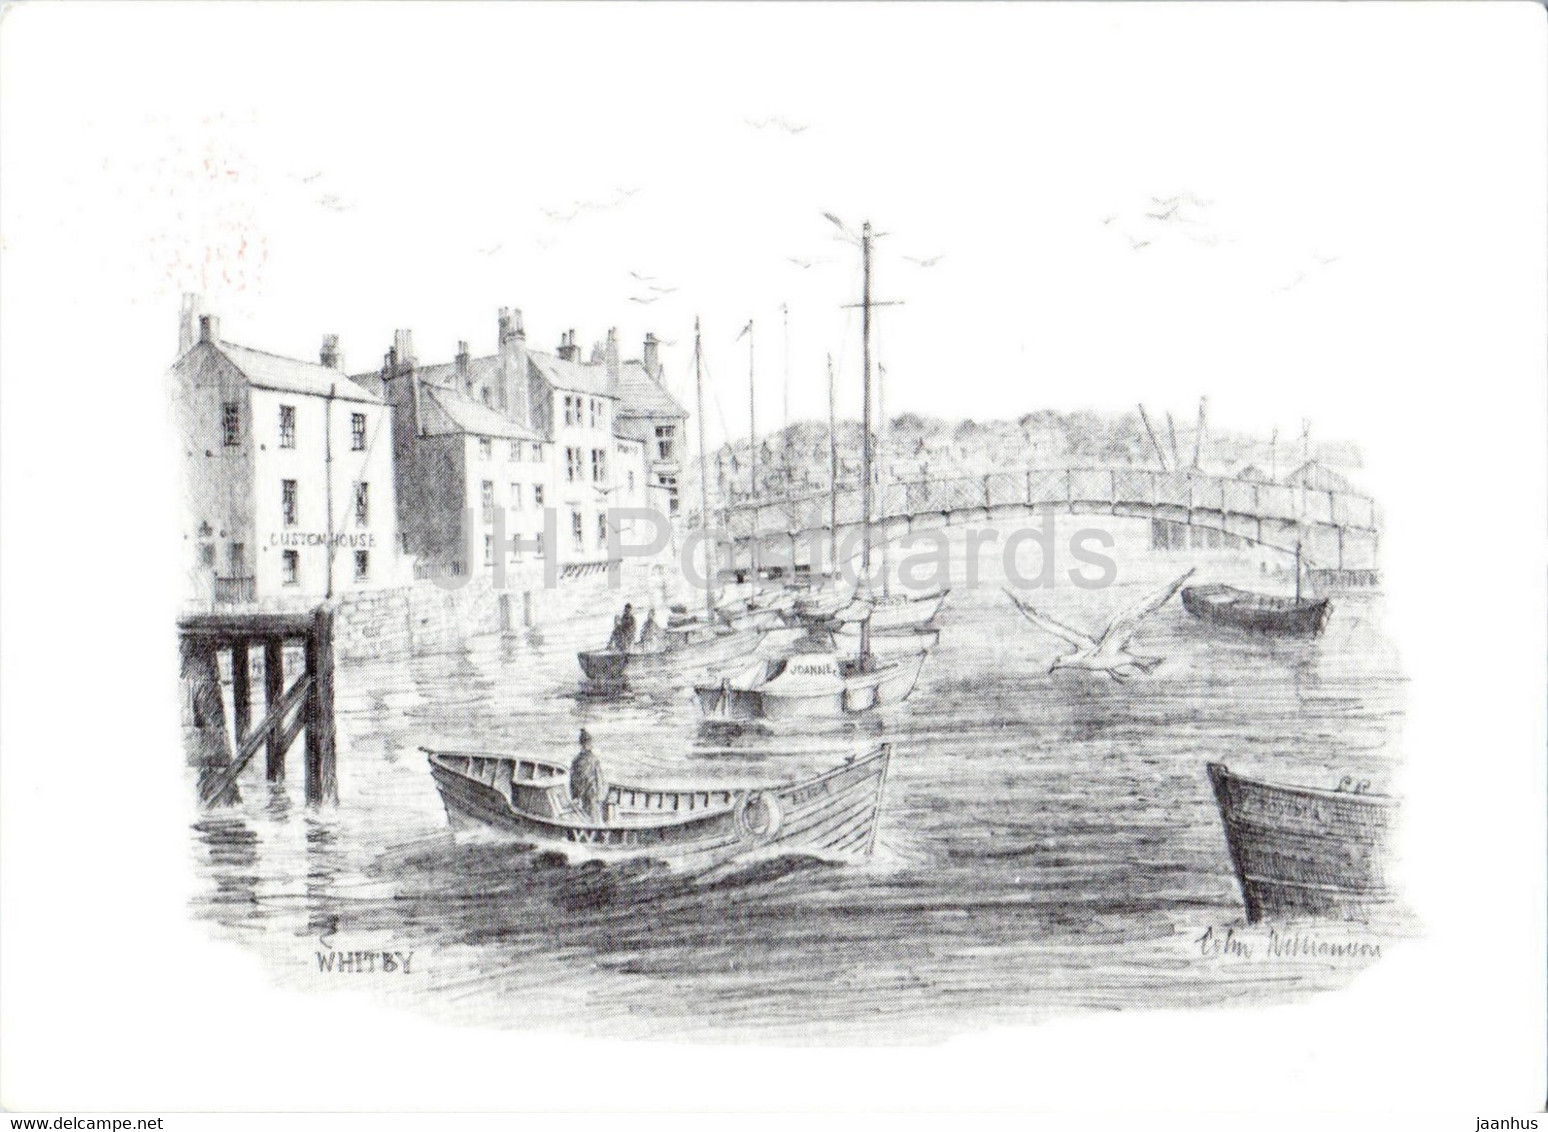 Whitby - Boat - Illustration - England - United Kingdom - Used - Whitby